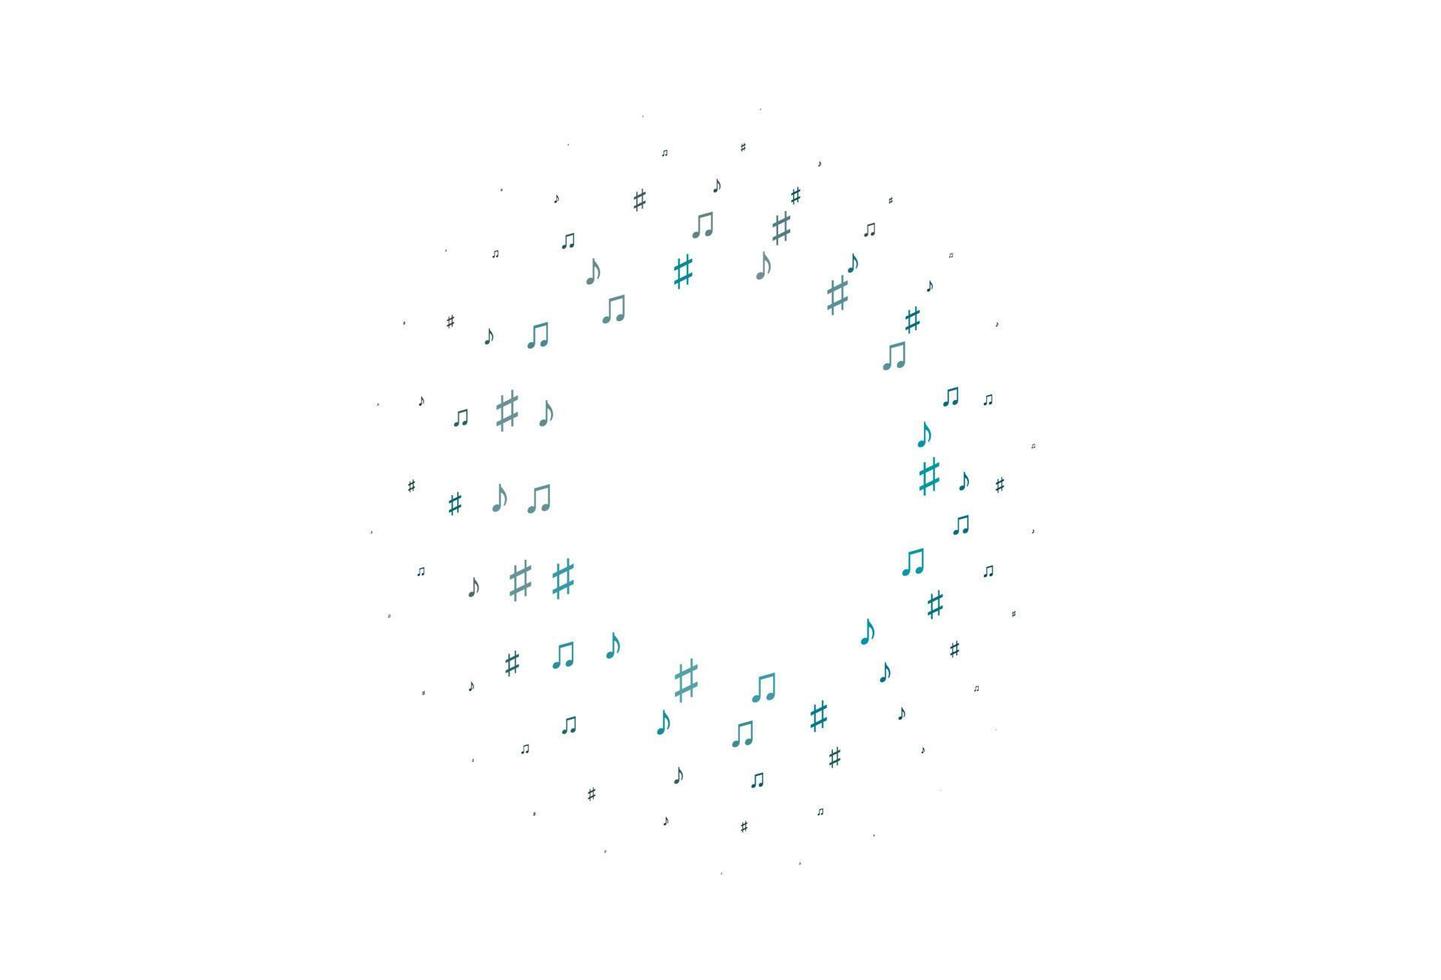 hellblaue Vektorvorlage mit musikalischen Symbolen. vektor